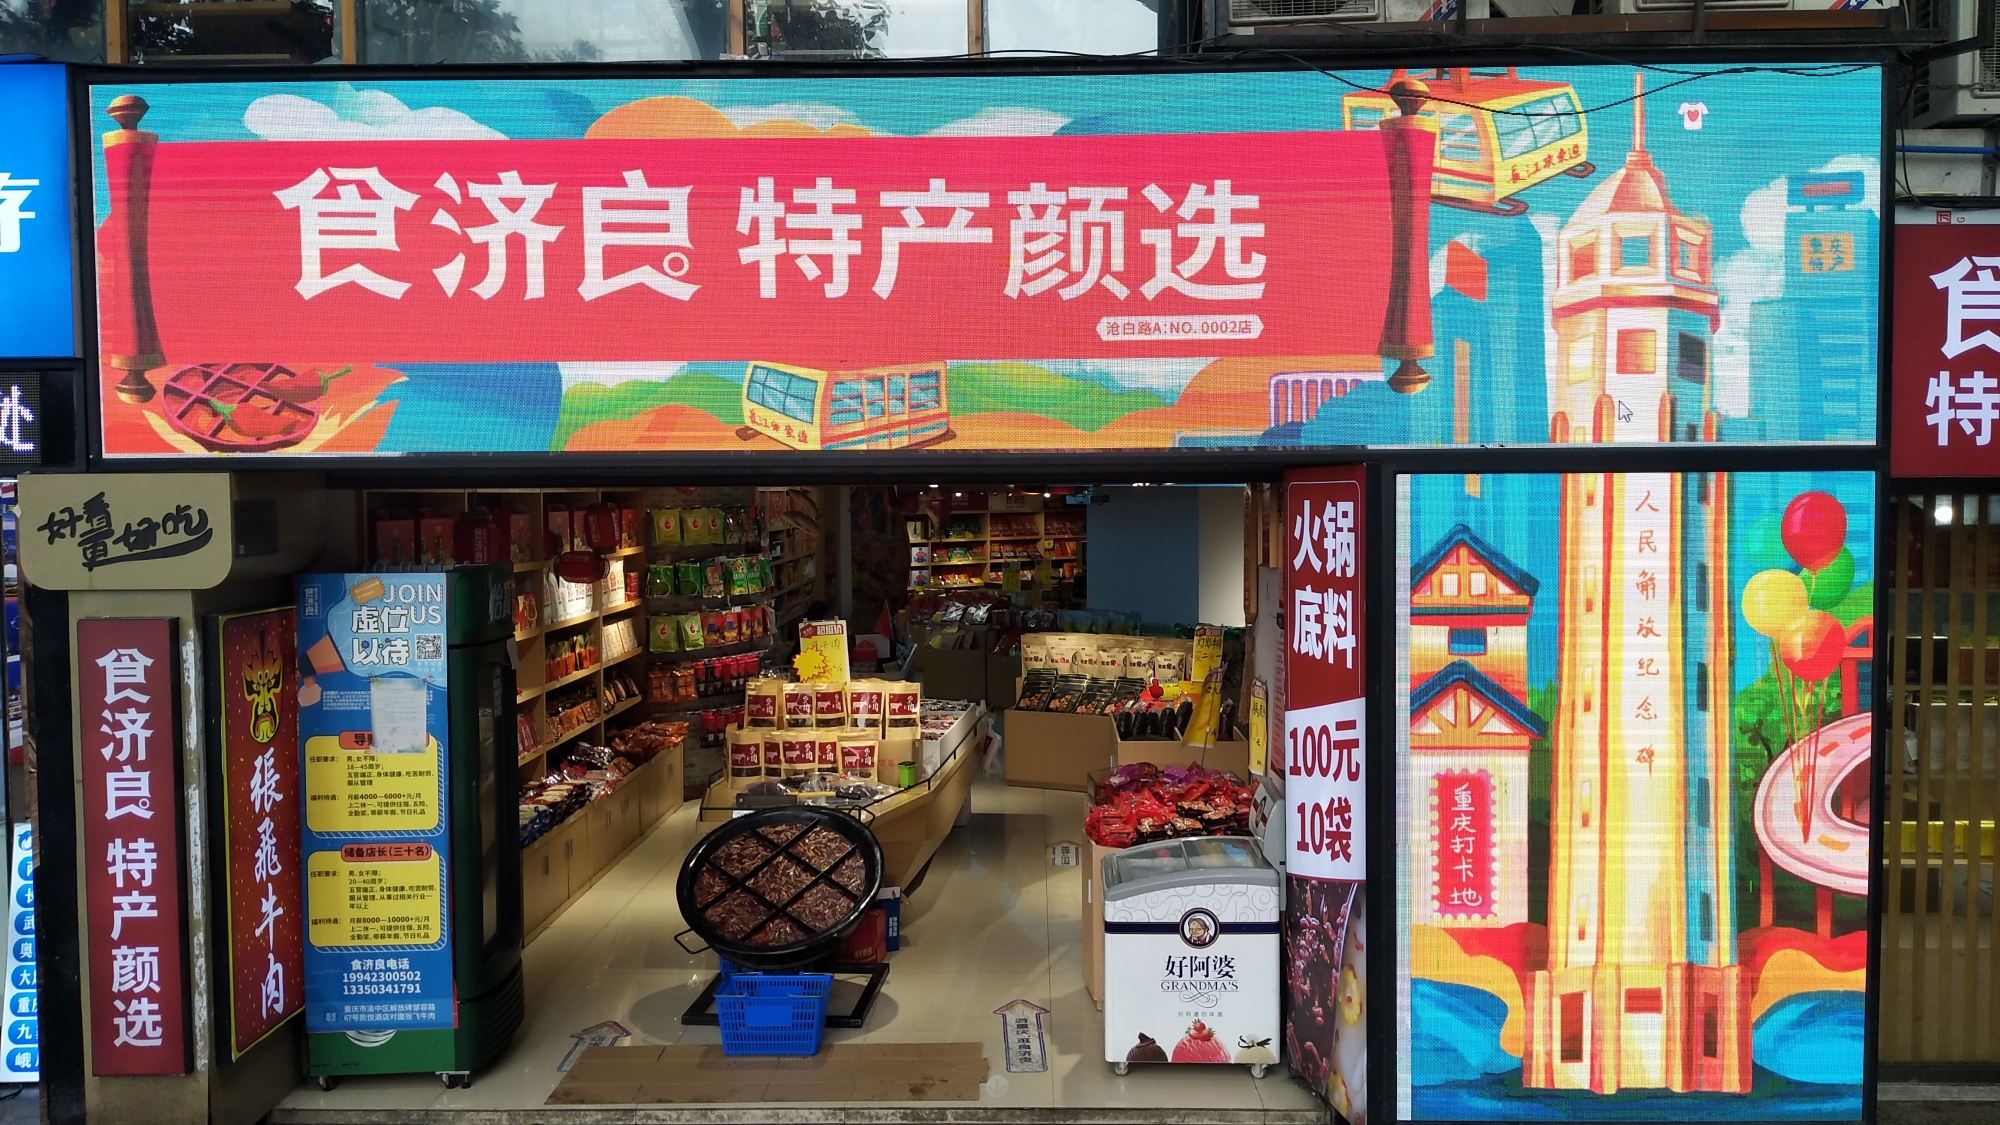 重庆食济良贸易有限公司 环境照片活动图片